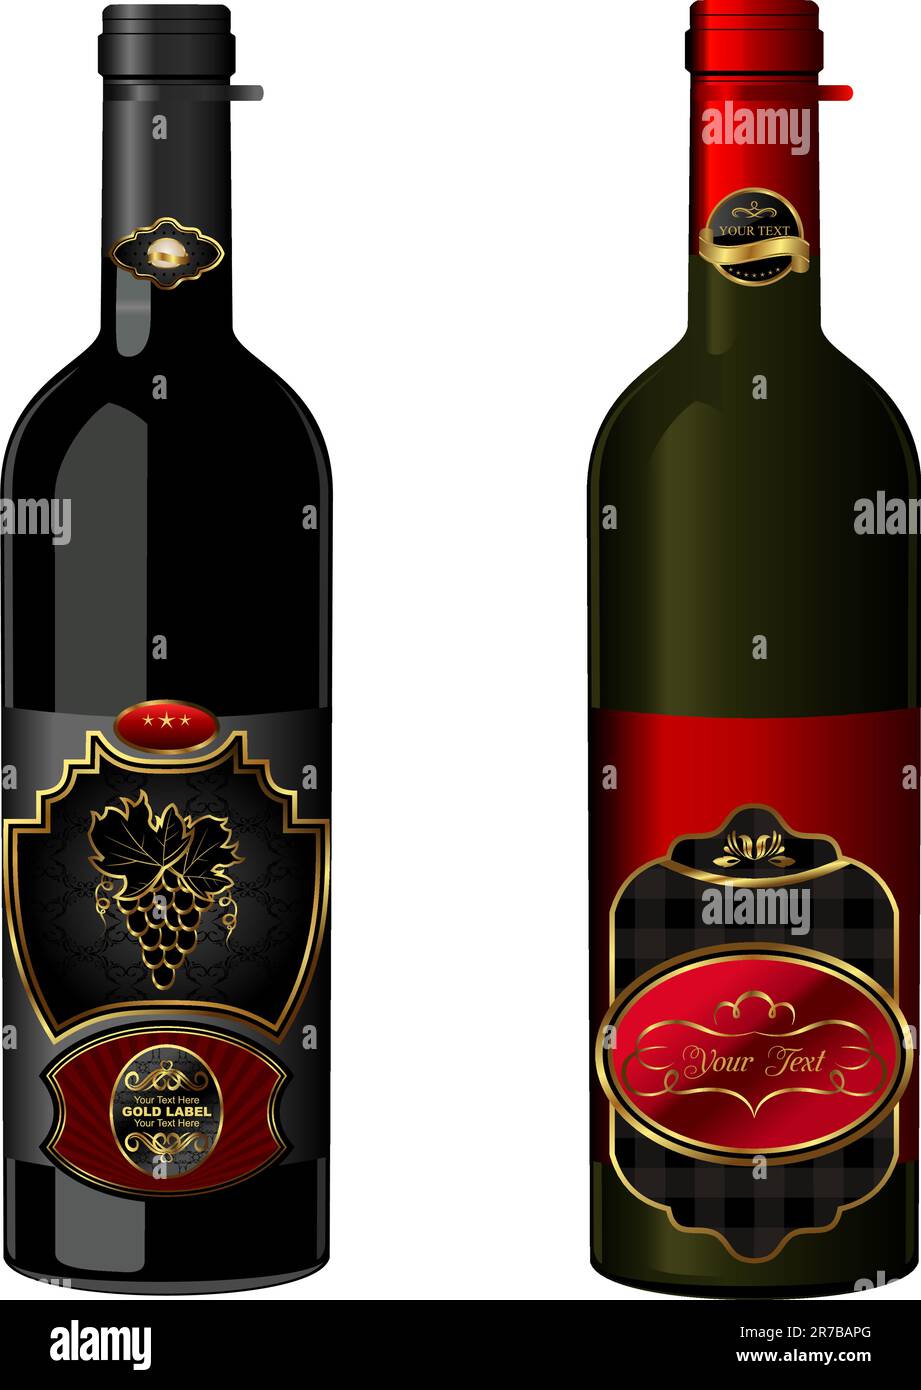 Immagine di bottiglie di vino con etichette d'annata attaccate isolate su sfondo bianco - vettore Illustrazione Vettoriale